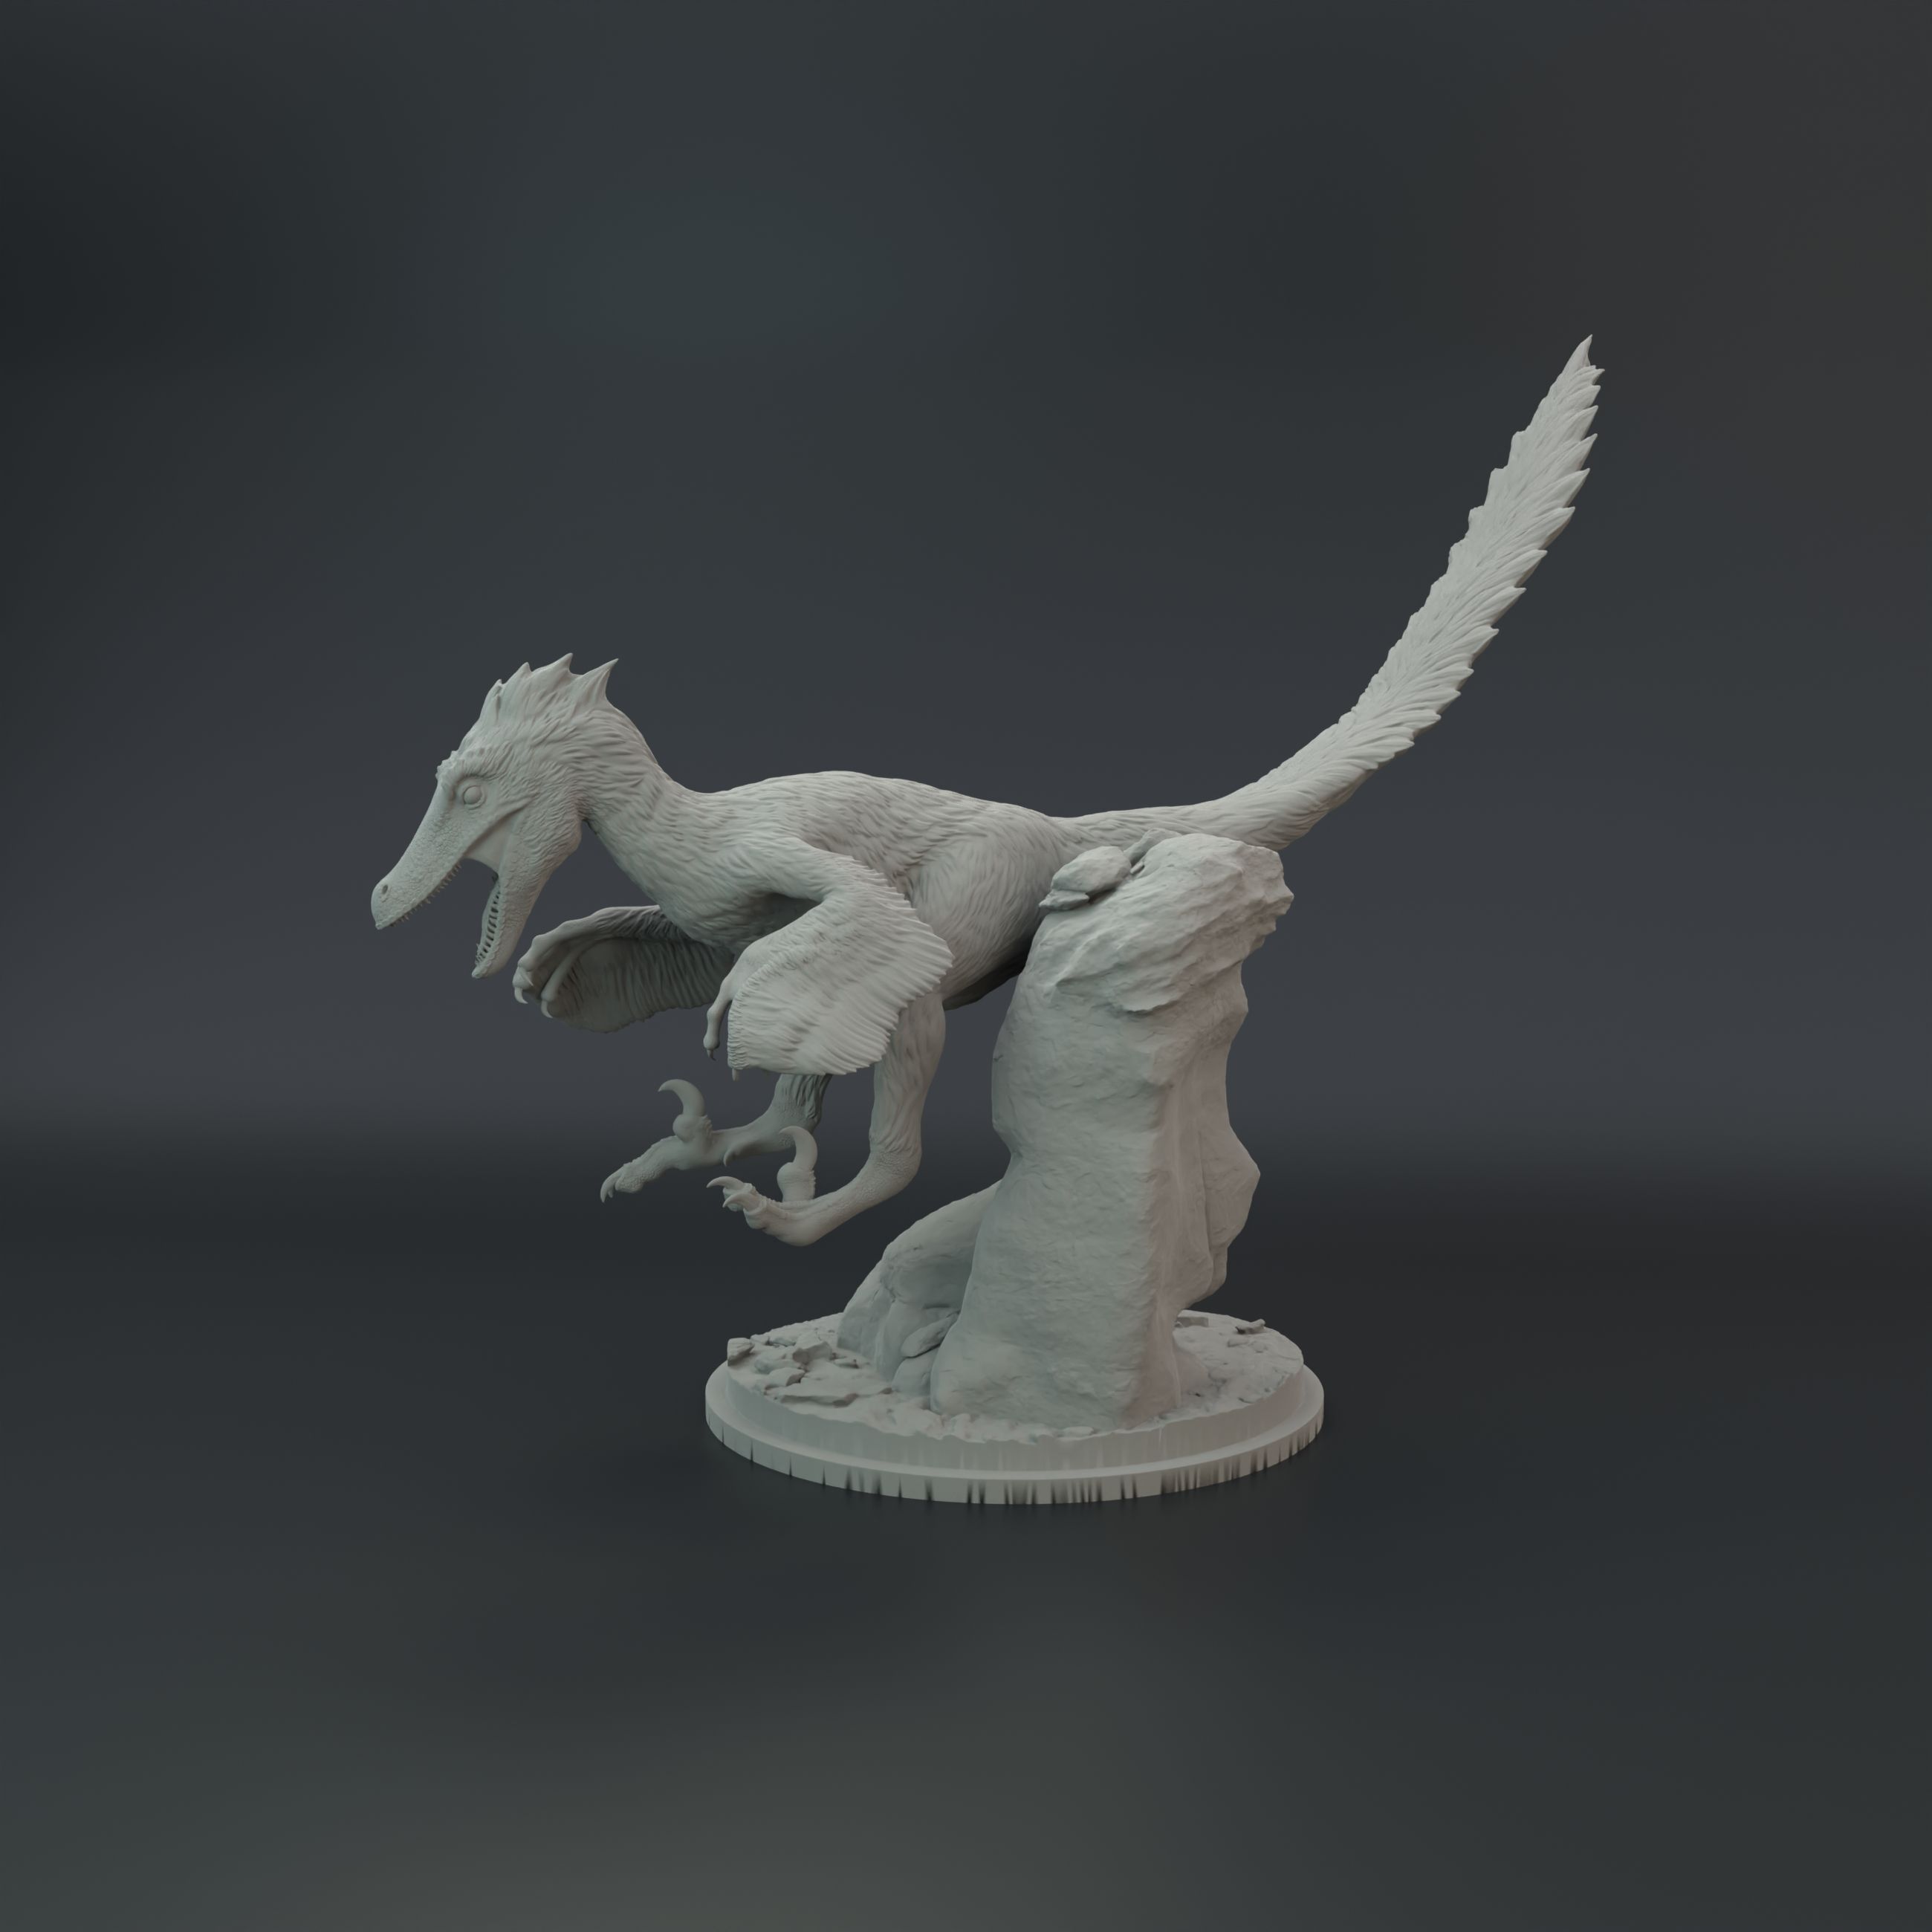 Velo_clay_pounce_2.jpg Archivo STL Pack Velociraptor・Idea de impresión 3D para descargar, Dino_and_Dog